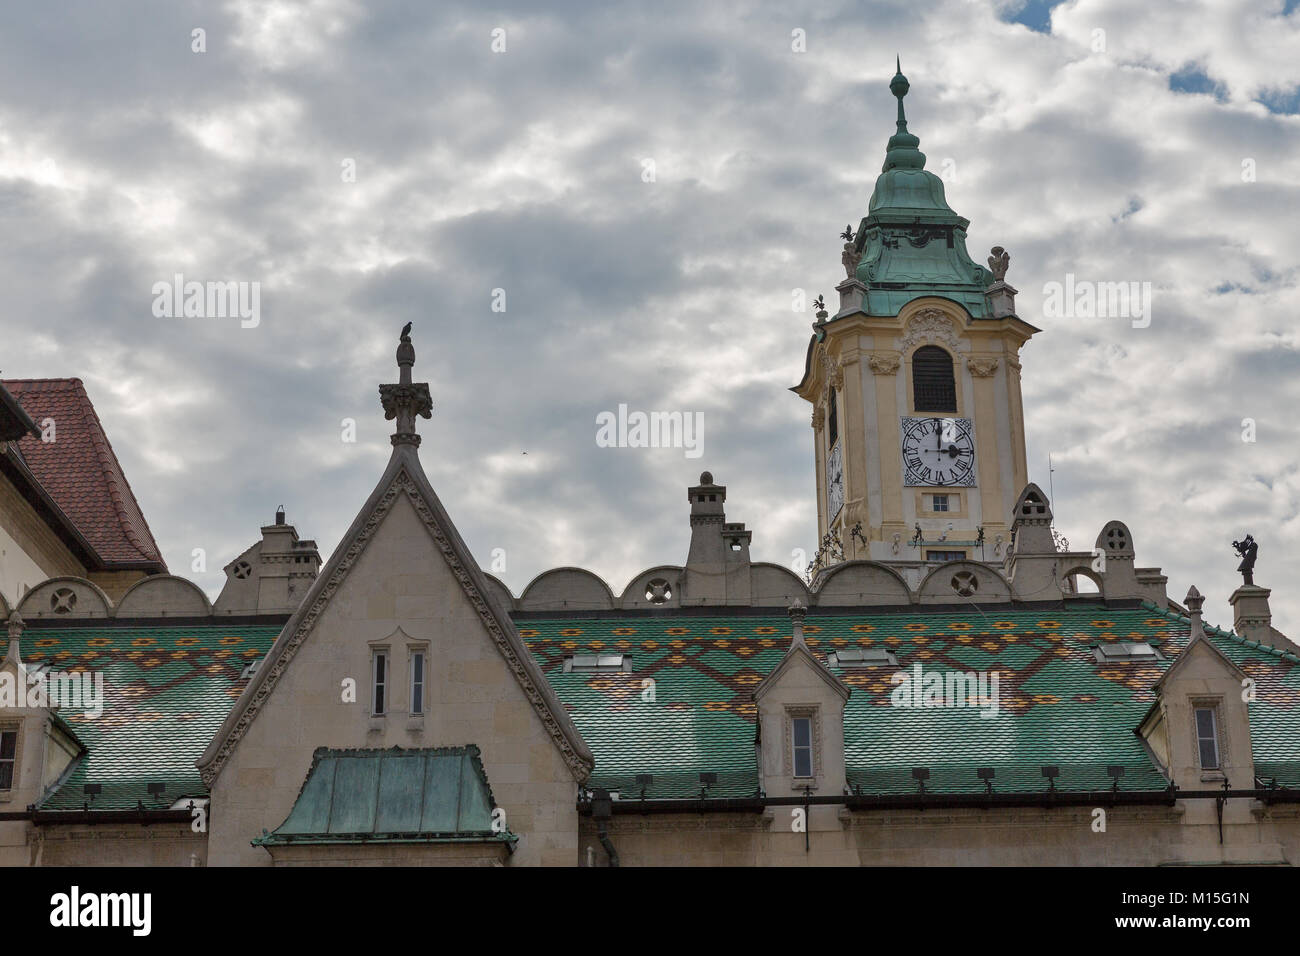 Tour du vieil hôtel de ville et musée de la ville l'histoire à Primacialne namestie ( Primat square ) à Bratislava, Slovaquie. Banque D'Images